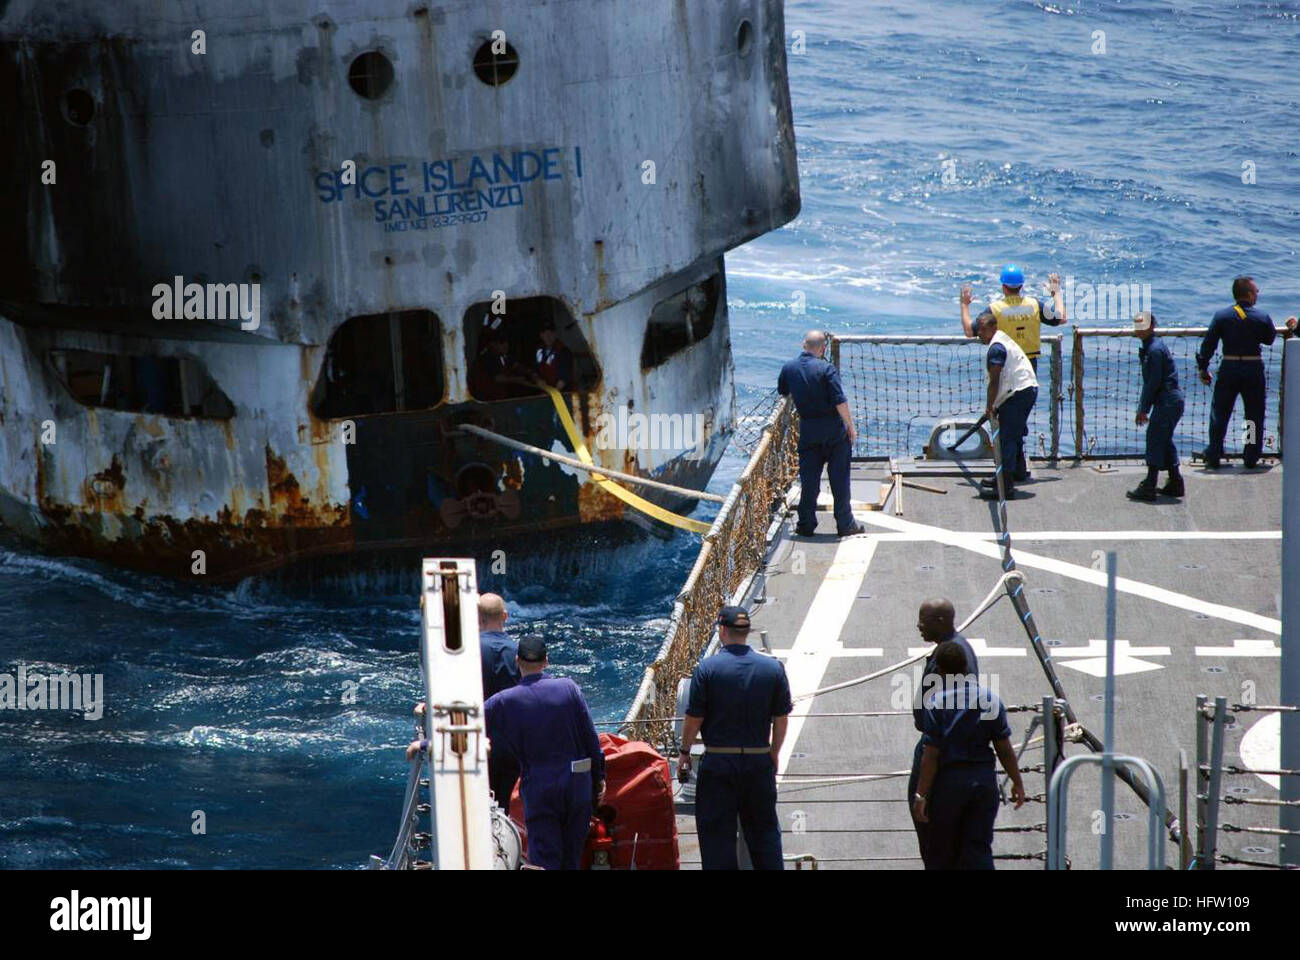 070926-N-0000X-002 de l'OCÉAN INDIEN (sept. 26, 2007) - missiles USS Stout (DDG 55) remorques immatriculés tanzanien Spice Island Traversier de passagers tandis que dans les eaux internationales au large des côtes de la Somalie. Spice Island, qui transportait pas de passagers, salué pour l'assistance technique lorsqu'il manqué de carburant en transit pour la Tanzanie. Stout fournis l'équipage avec de la nourriture, d'eau et de carburant et a aidé à obtenir le fonctionnement du navire par ses propres moyens. Les forces de la Coalition ont une longue tradition d'aider les marins en détresse par la fourniture d'aide médicale, une assistance technique et d'une recherche Banque D'Images